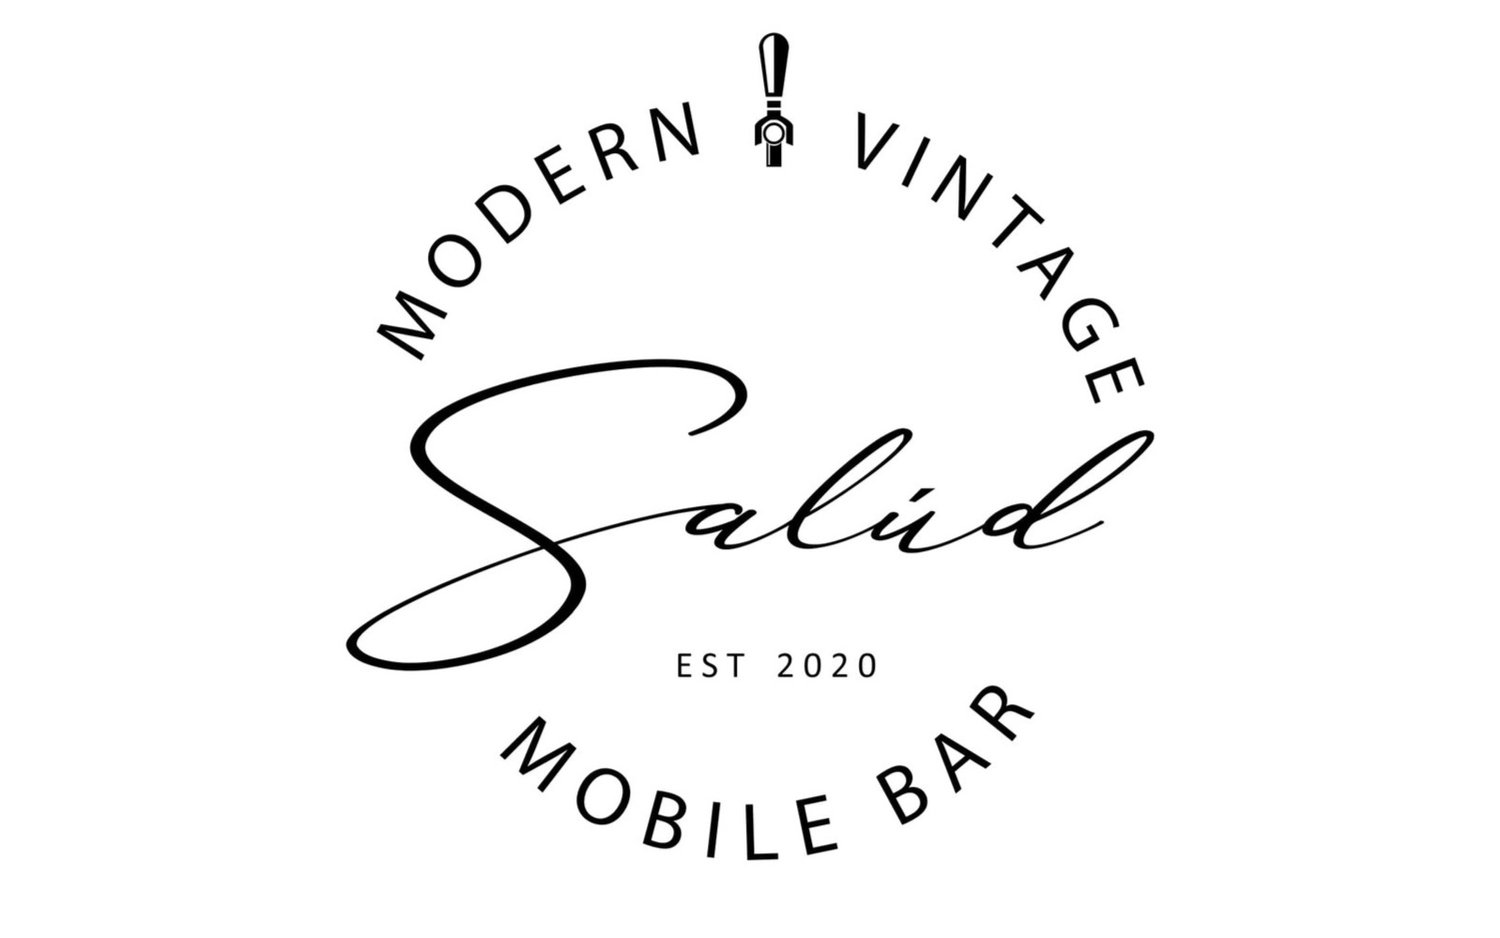 Salud Modern Vintage Mobile Bar